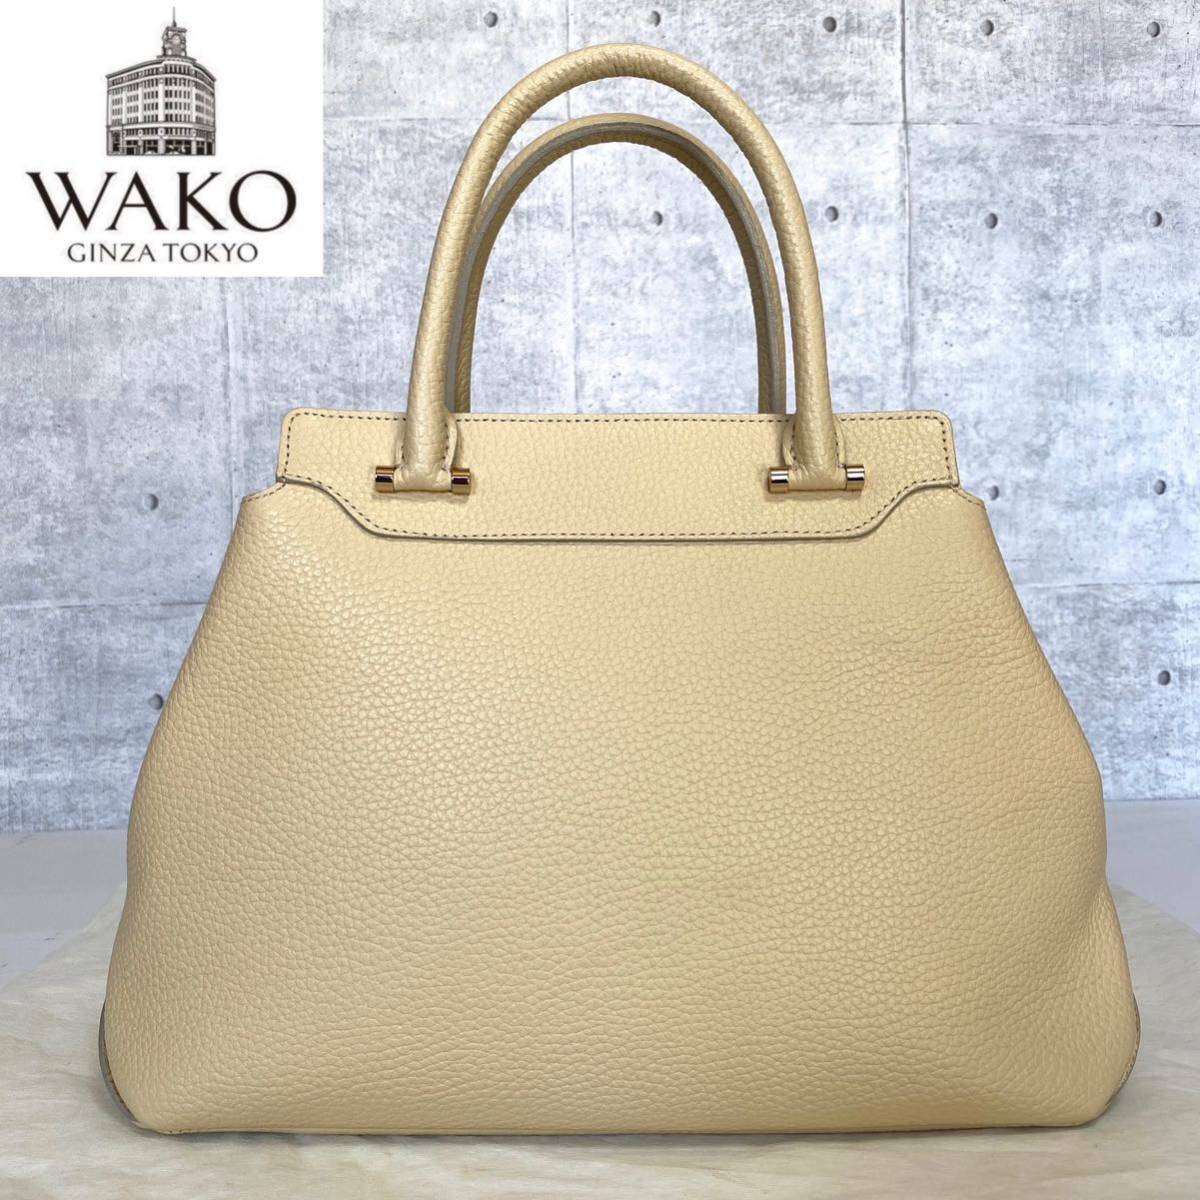 未使用級 WAKO ワコウ 銀座 和光 シボ革 ベージュ レザー ライトゴールド金具 ショルダー ハンドバッグ トートバッグ 